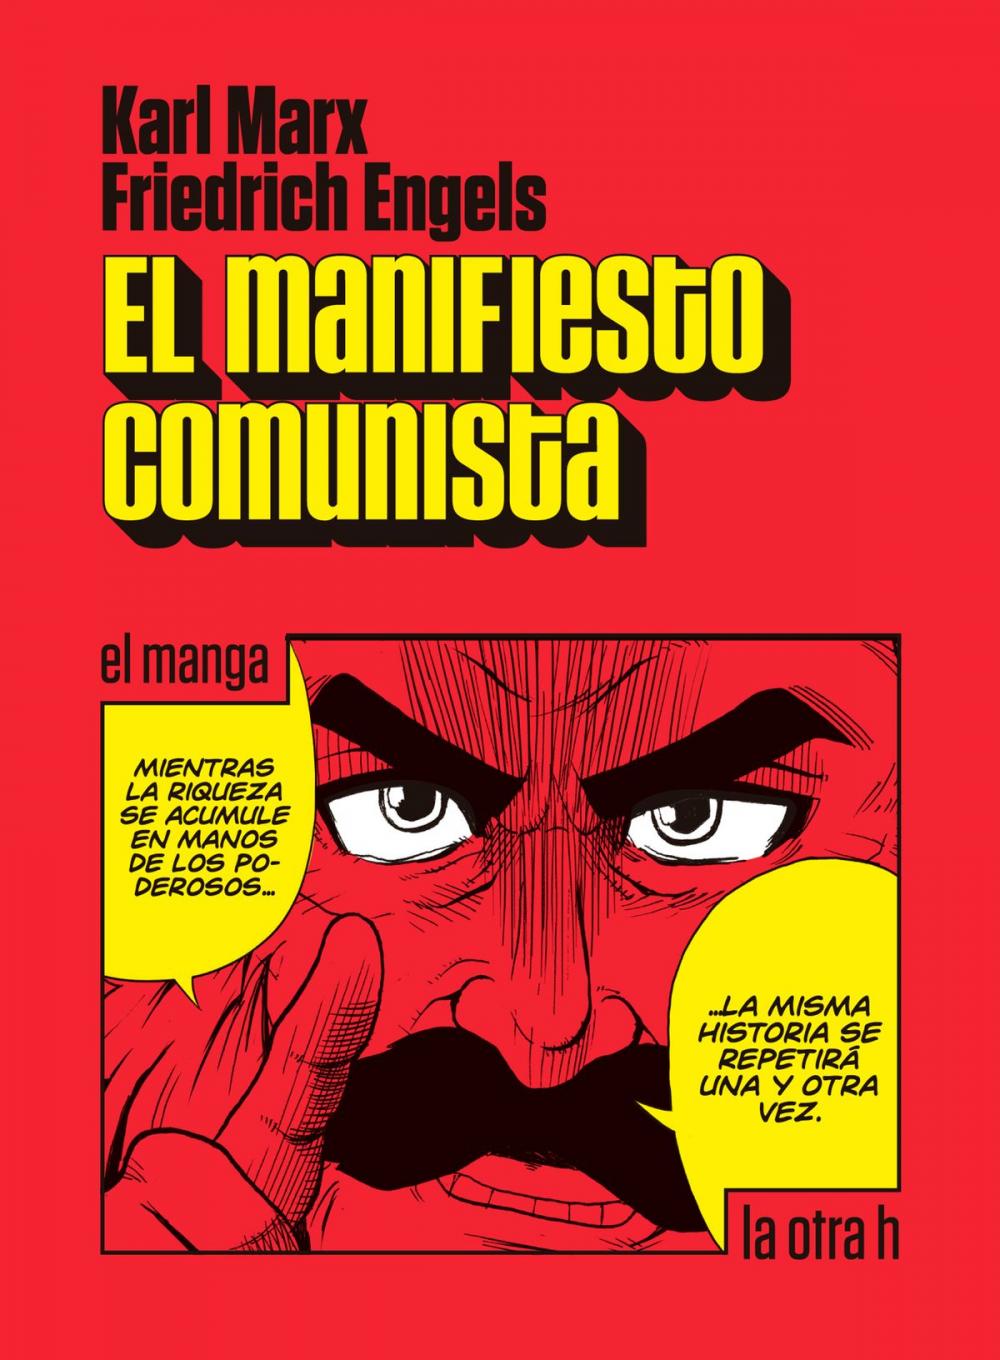 Big bigCover of El manifiesto comunista